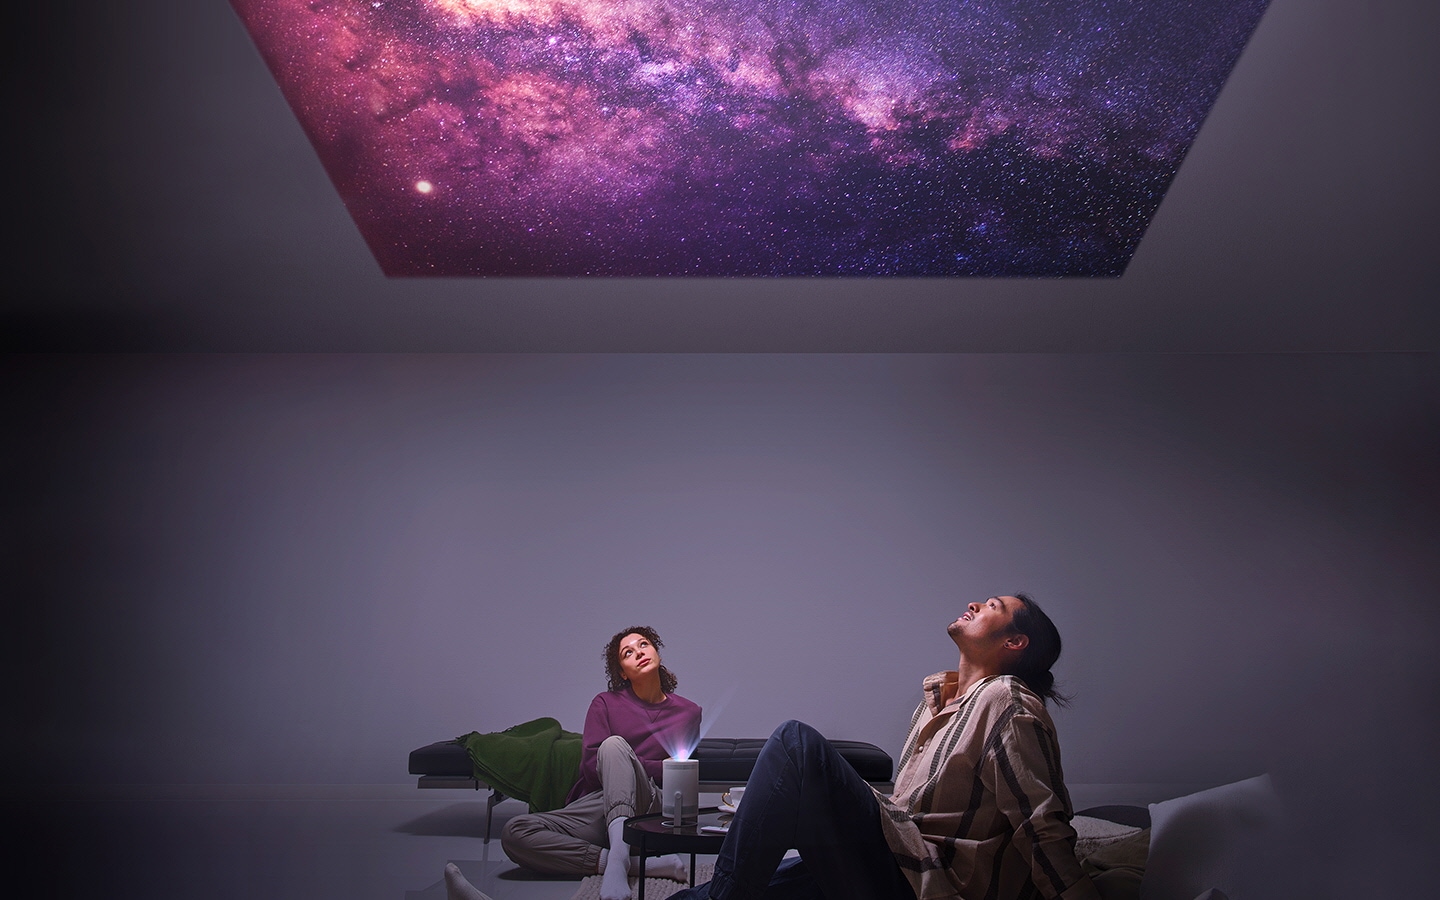 رجل وامرأة ينظران إلى النجوم المُسقطة على السقف من جهاز العرض  The Freestyle